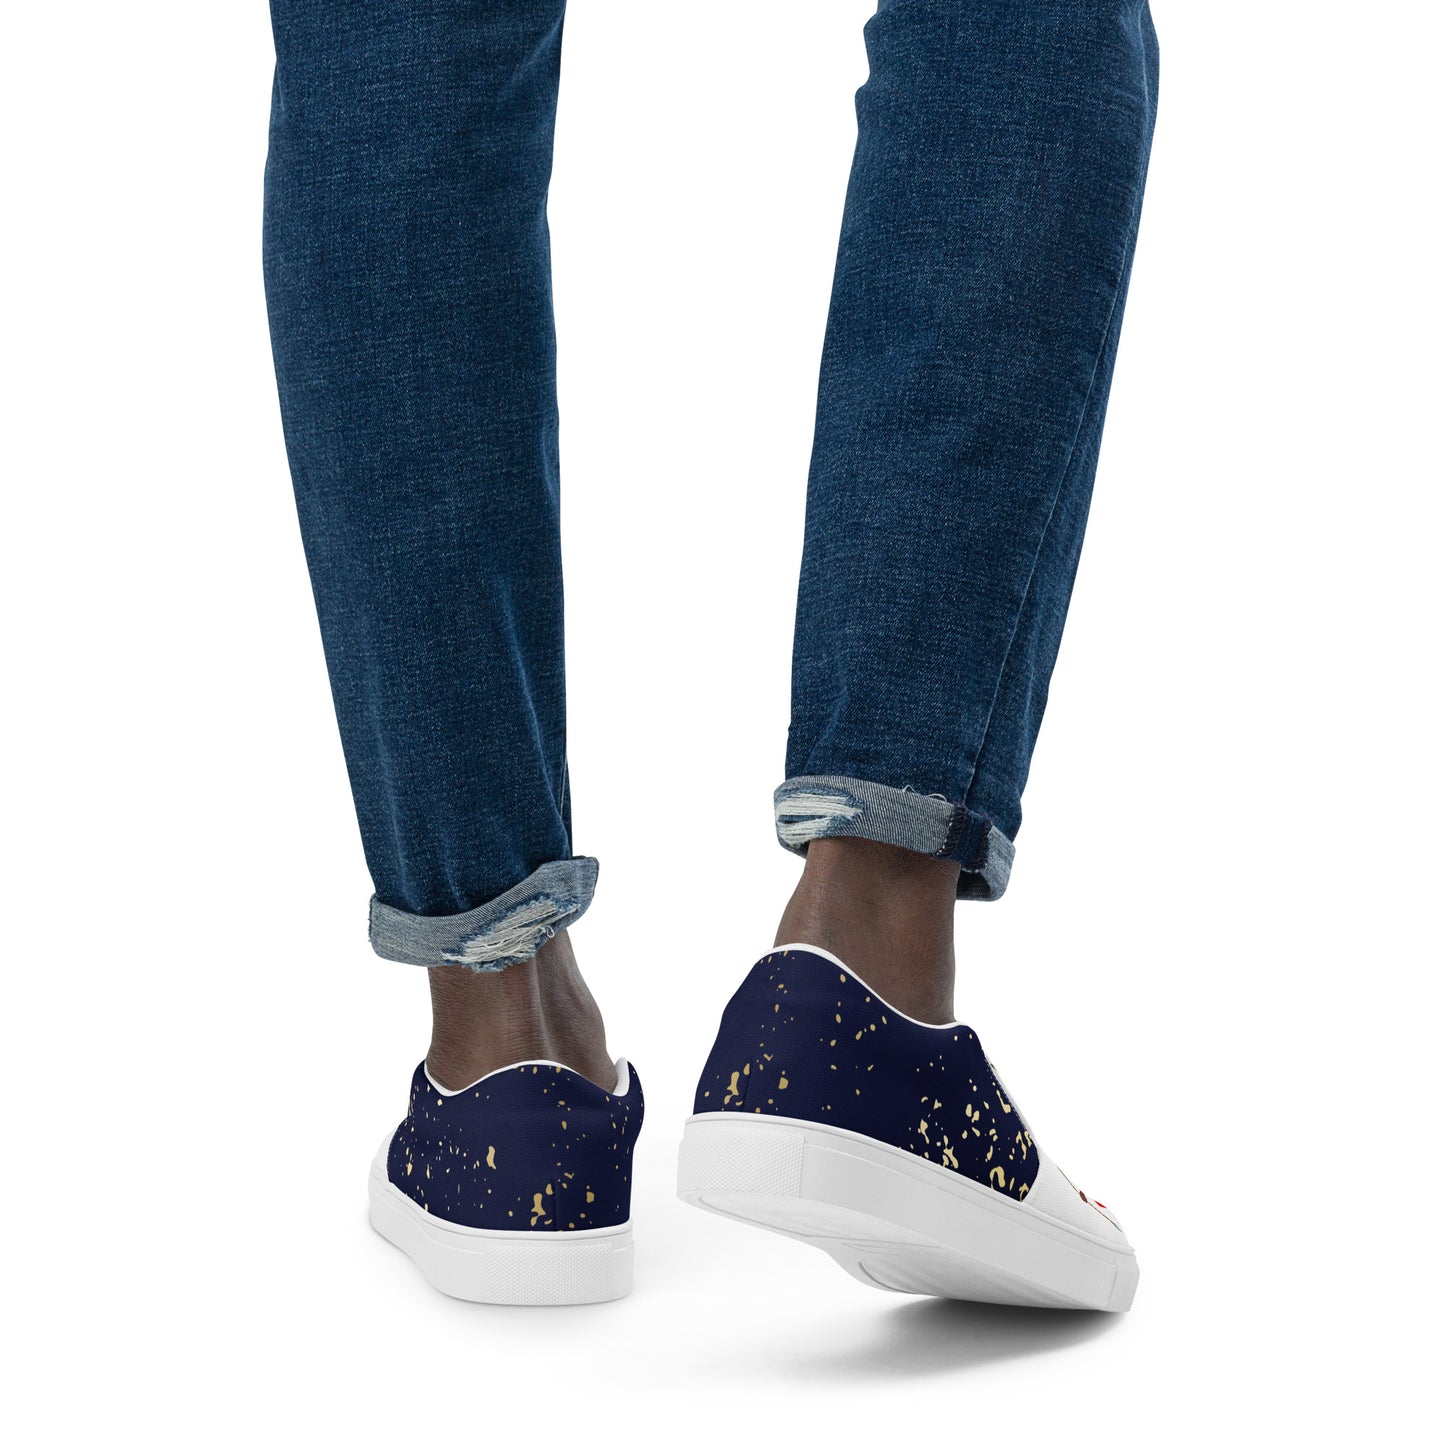 Agojie Jeans Men’s Slip-On Canvas Shoes